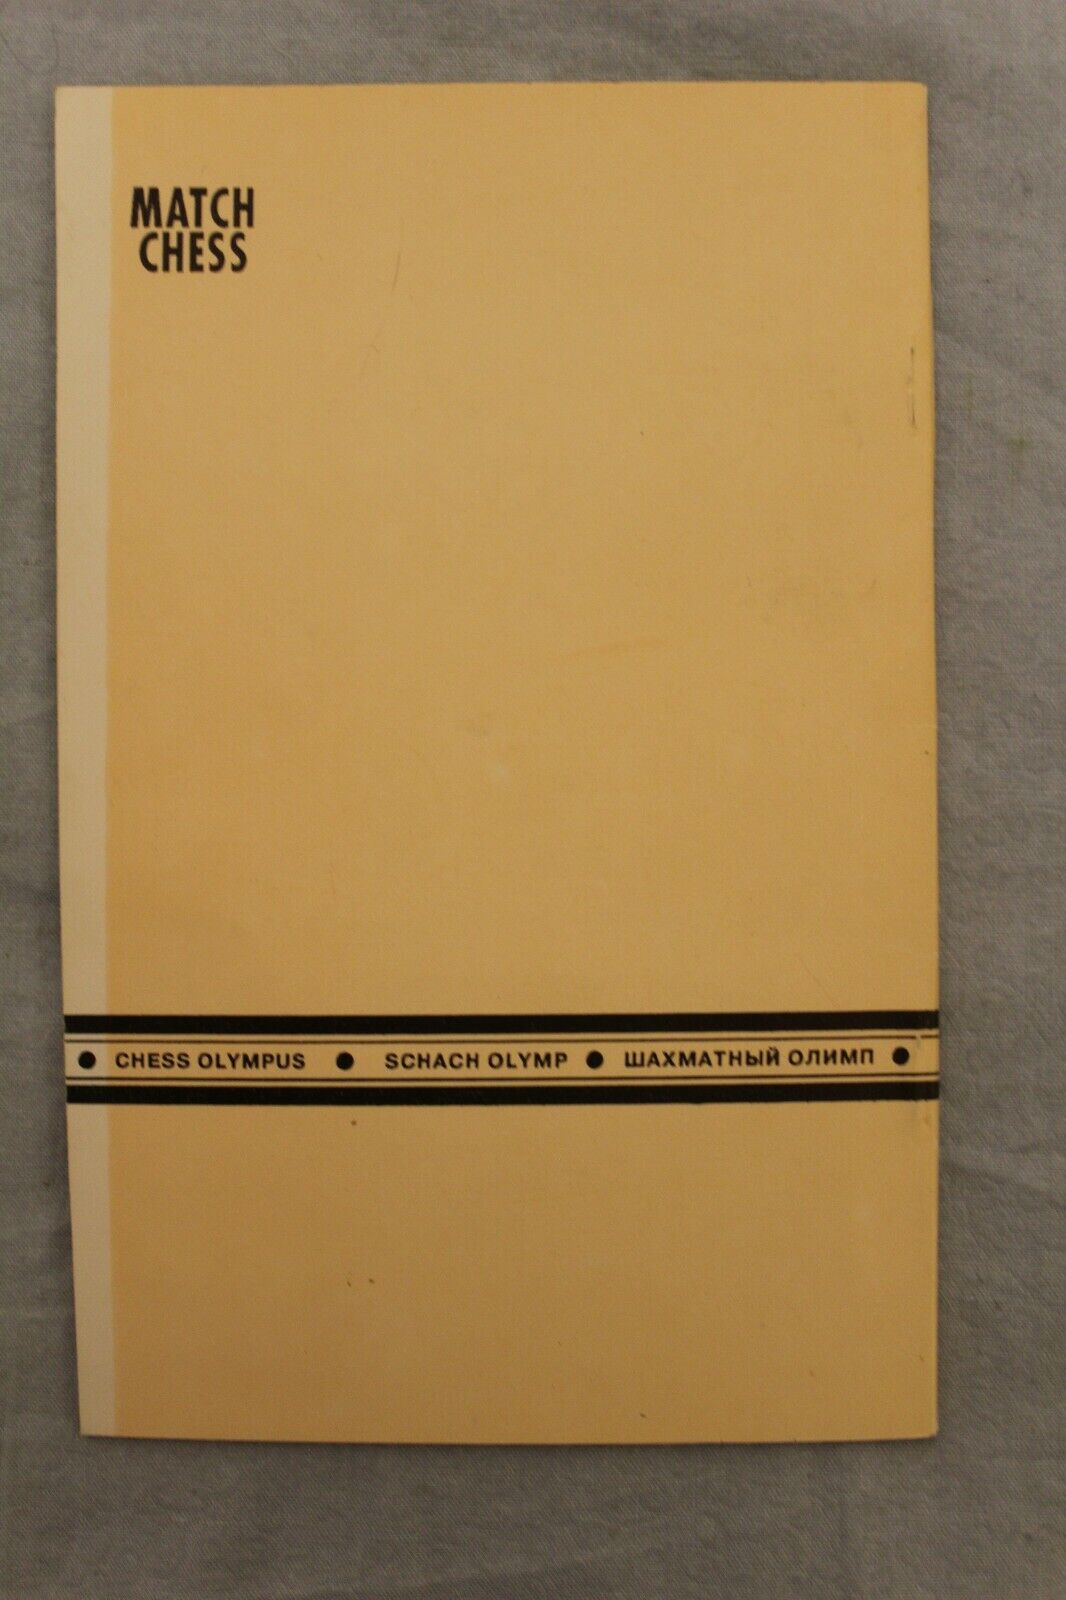 11128.Chess Book: Spasski – Fischer. Chess Olympus. 1992